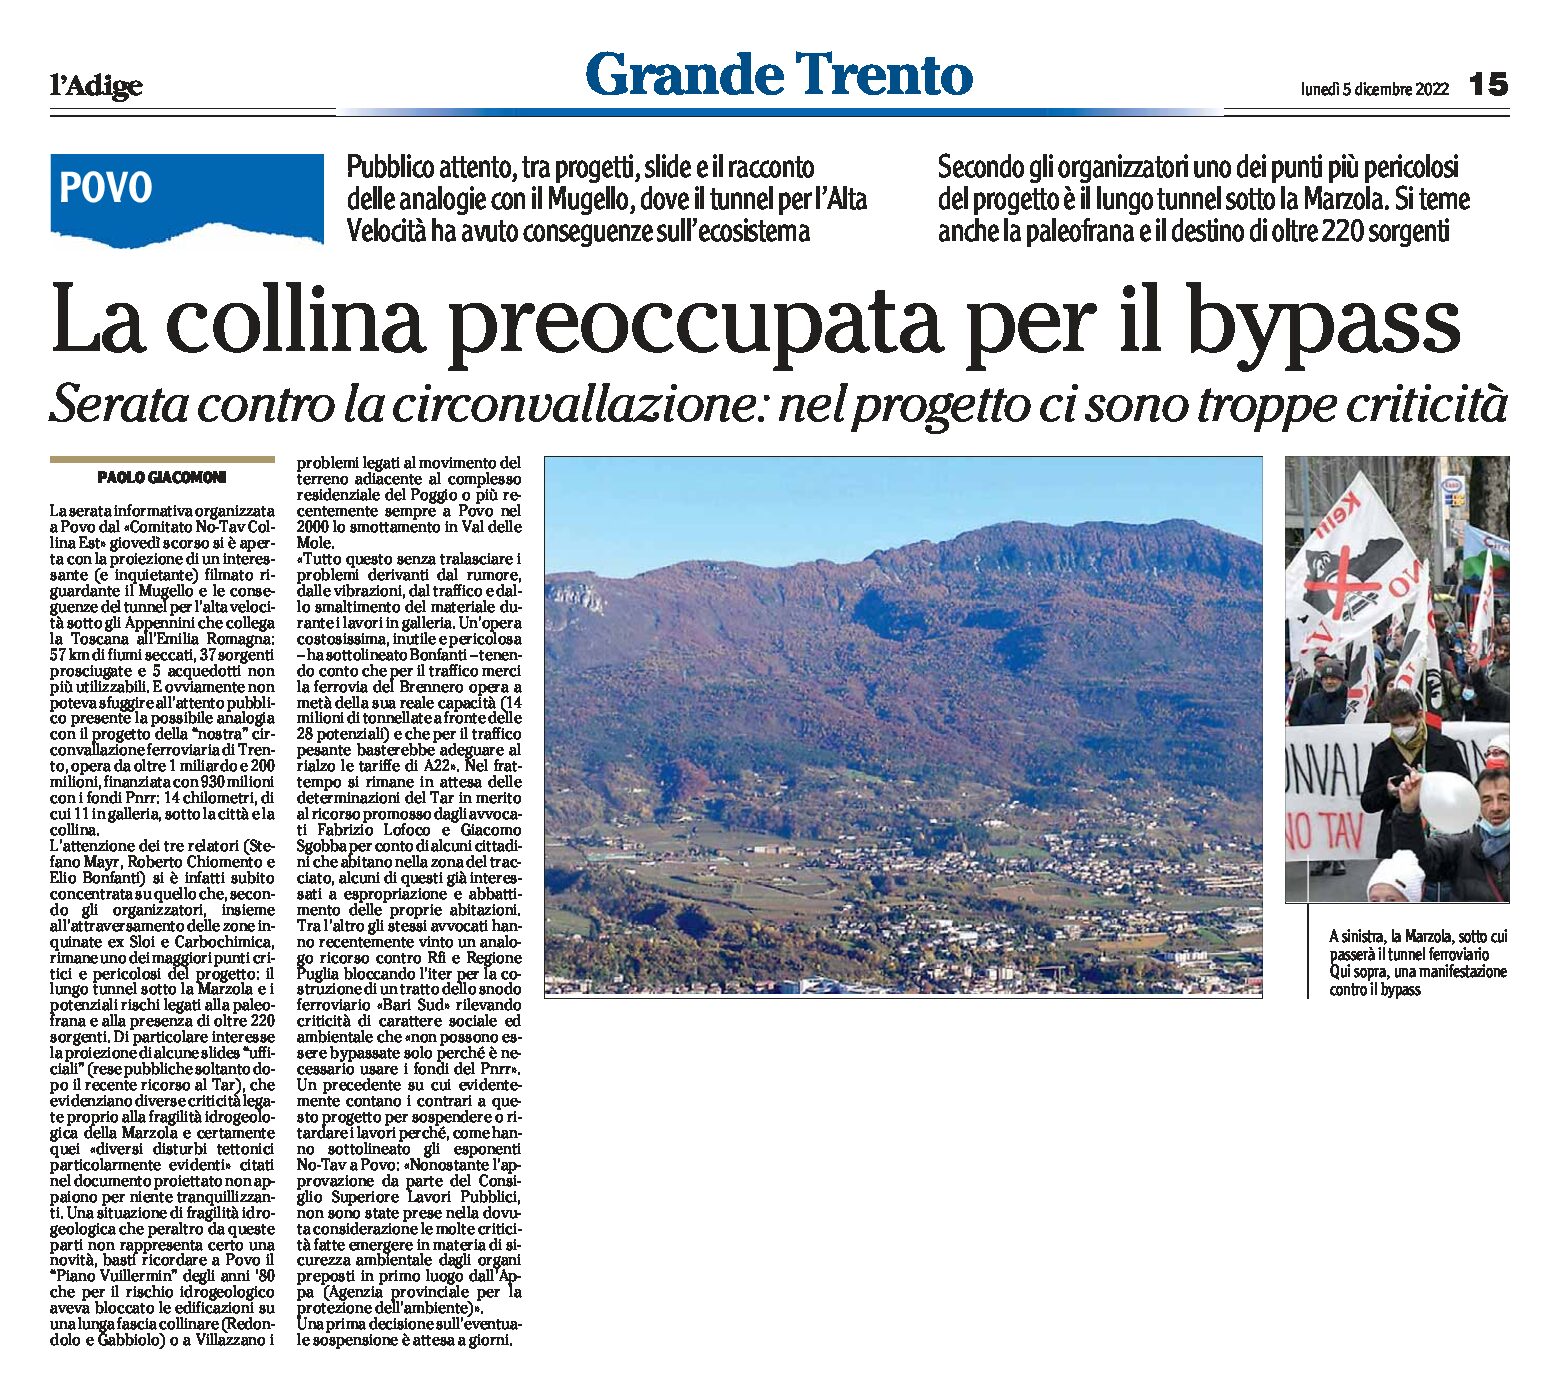 Trento: la collina preoccupata per il bypass: Serata a Povo contro la circonvallazione